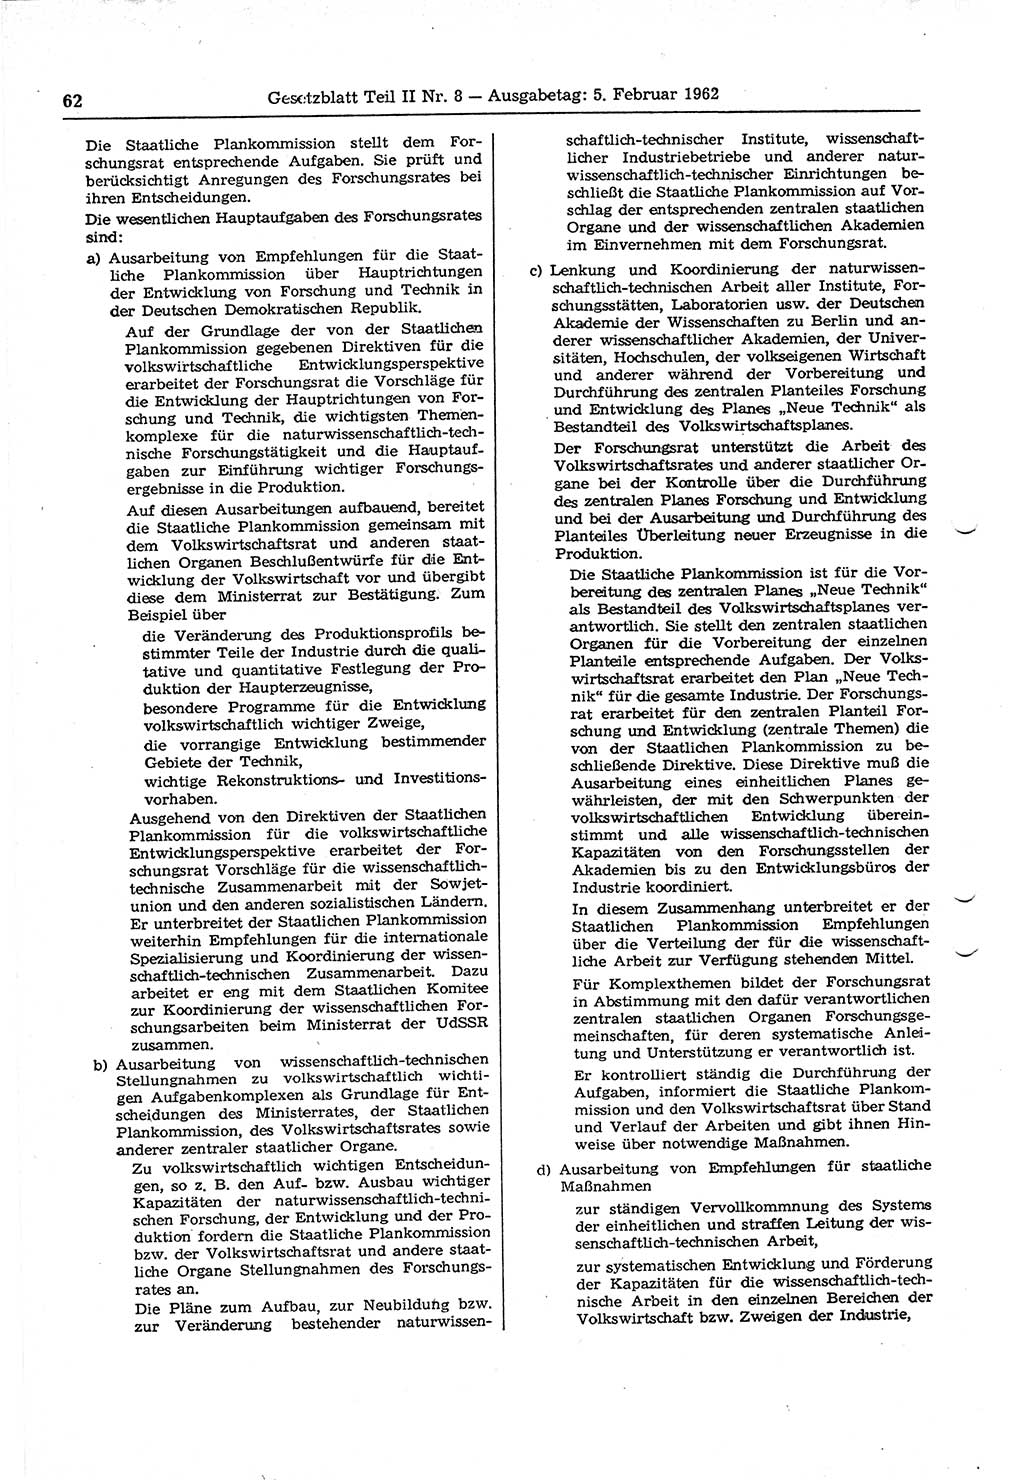 Gesetzblatt (GBl.) der Deutschen Demokratischen Republik (DDR) Teil ⅠⅠ 1962, Seite 62 (GBl. DDR ⅠⅠ 1962, S. 62)